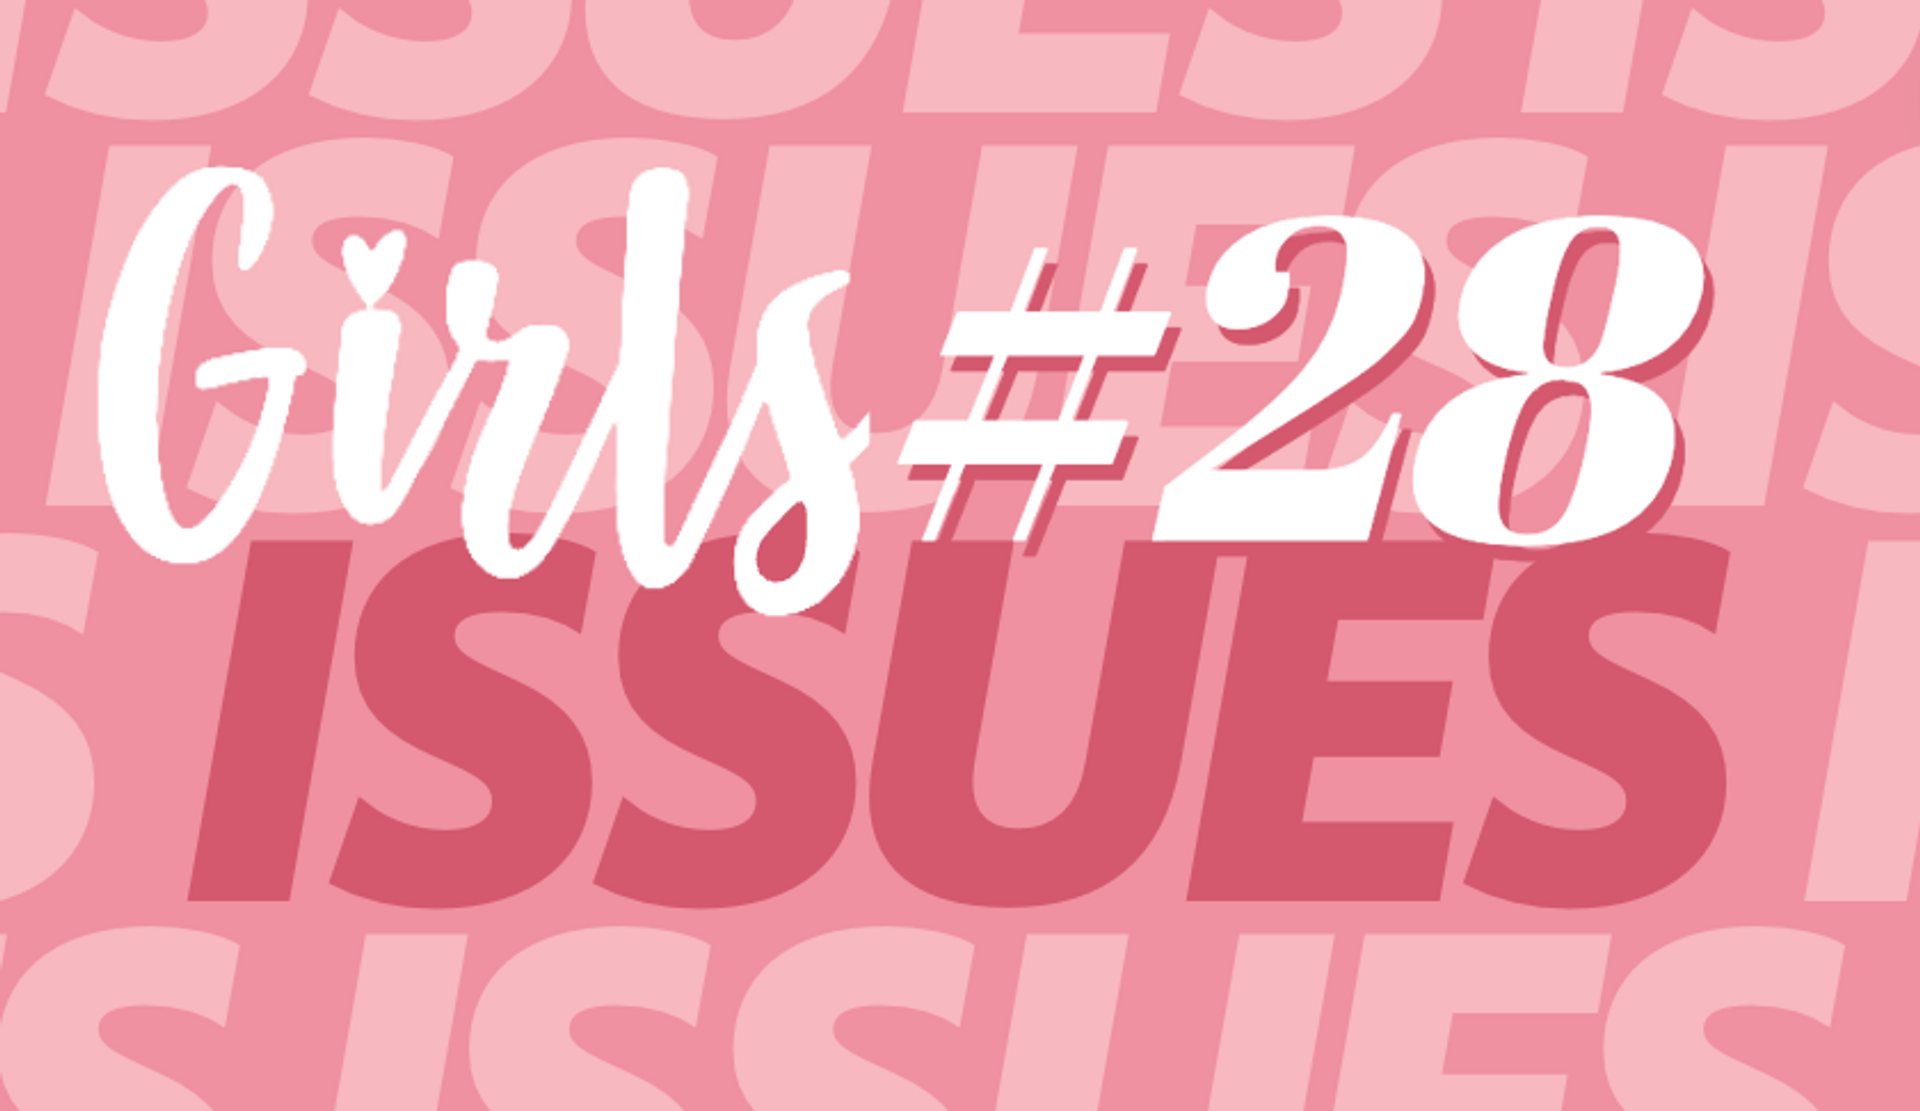 weer kosten Rauw Girls Issues #28: 'Ik slaap nog met een knuffel'